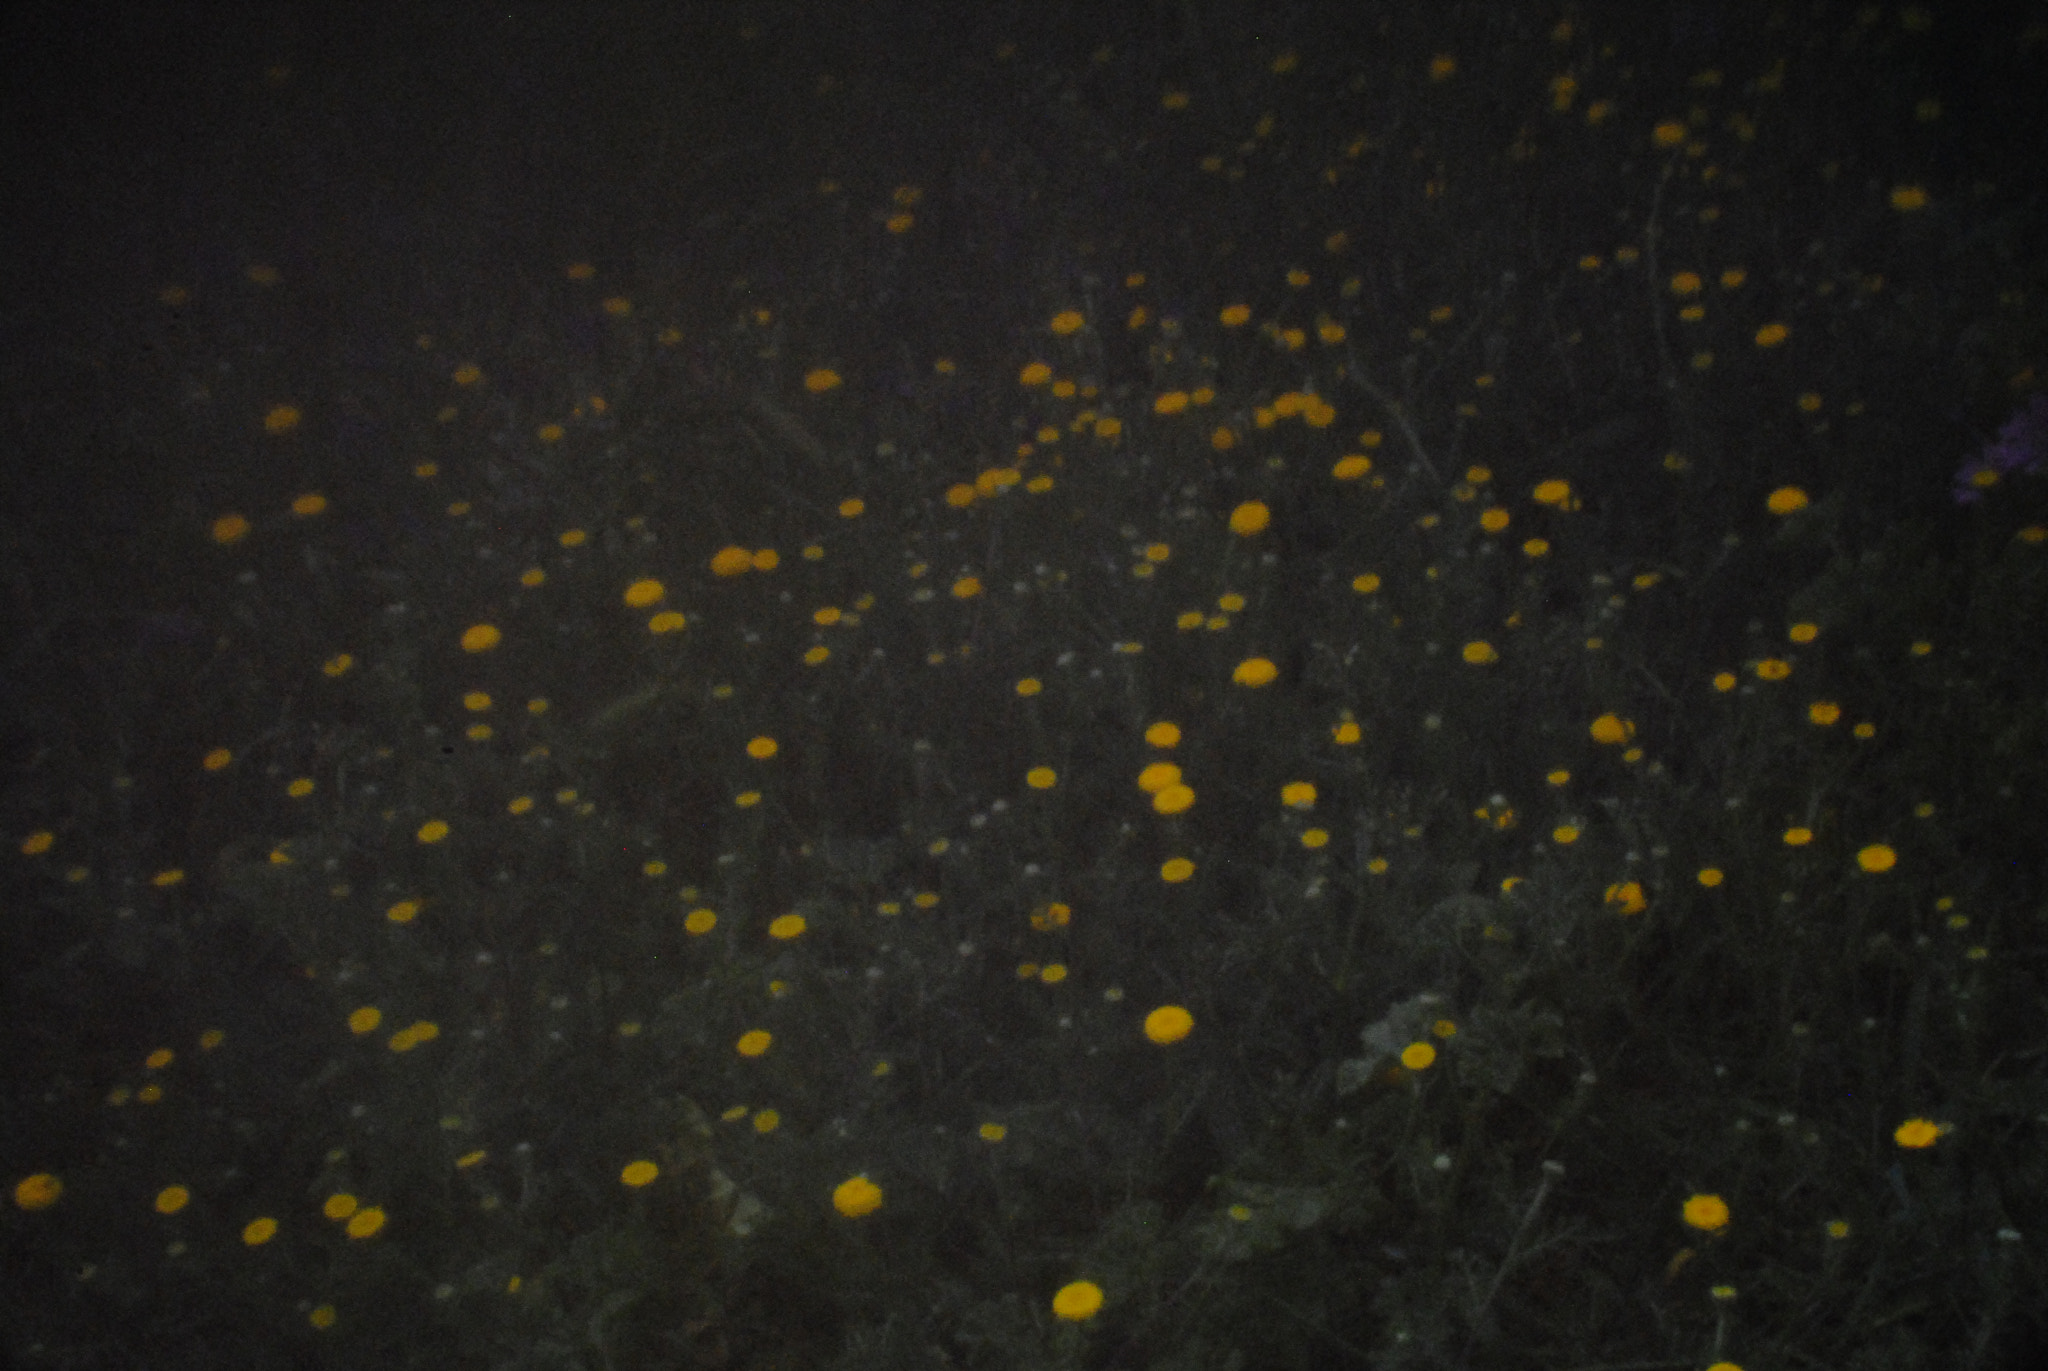 Nikon D3000 + AF Nikkor 50mm f/1.8 sample photo. Universe of flowers photography